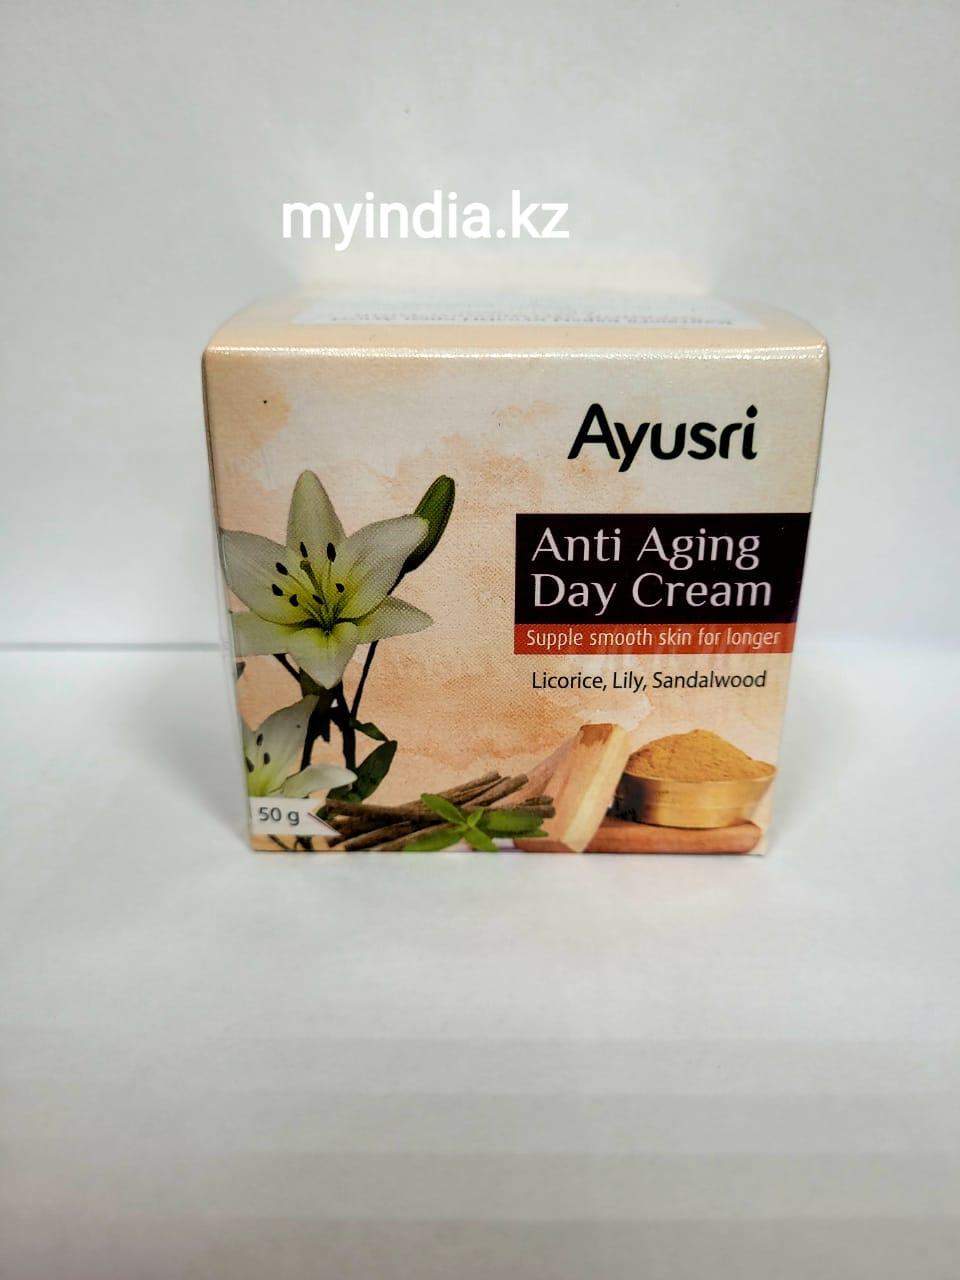 Антивозрастной дневной крем (Anti Aging Day Cream AYUSRI), 50 гр